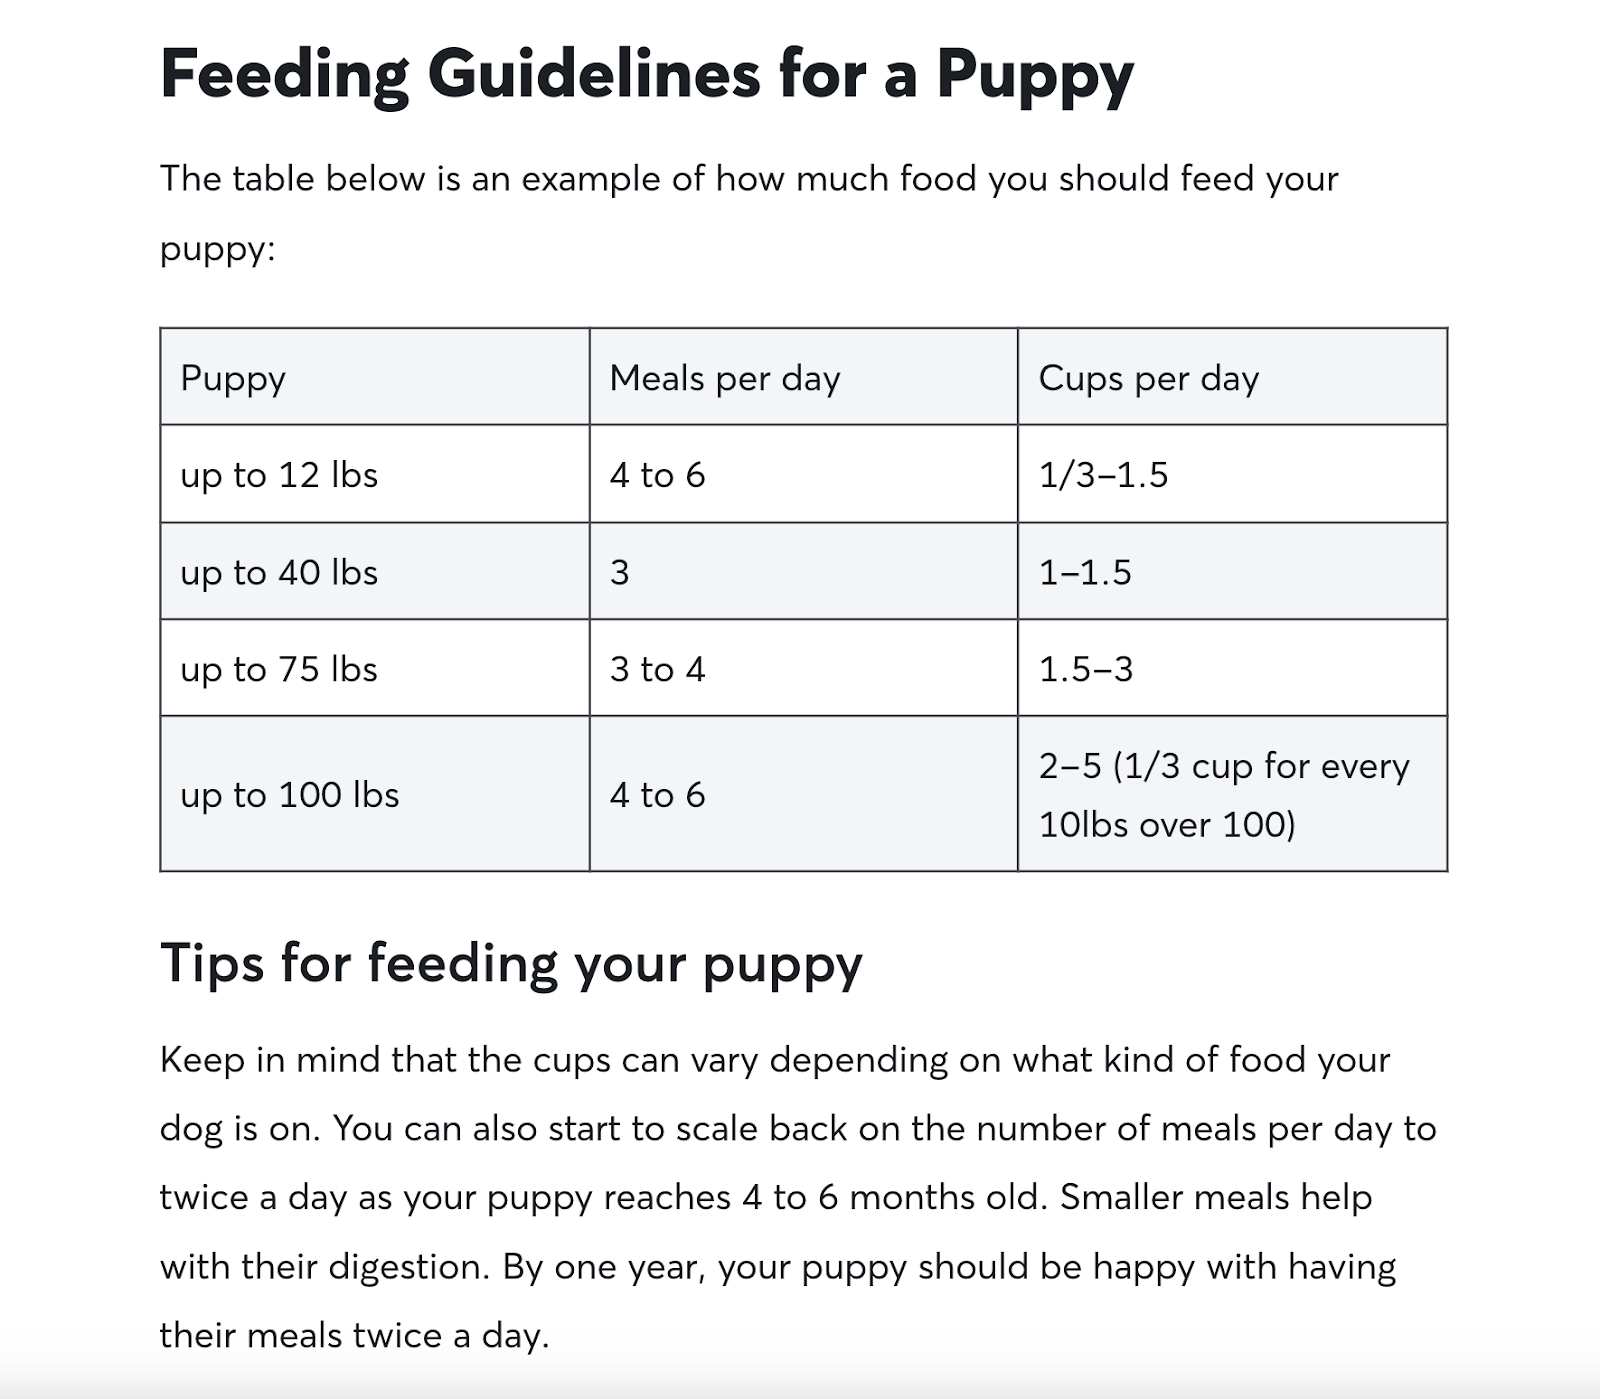 Un tableau du guide d'alimentation pour chiens de Rover, montrant les directives d'alimentation pour différentes tailles de chiots